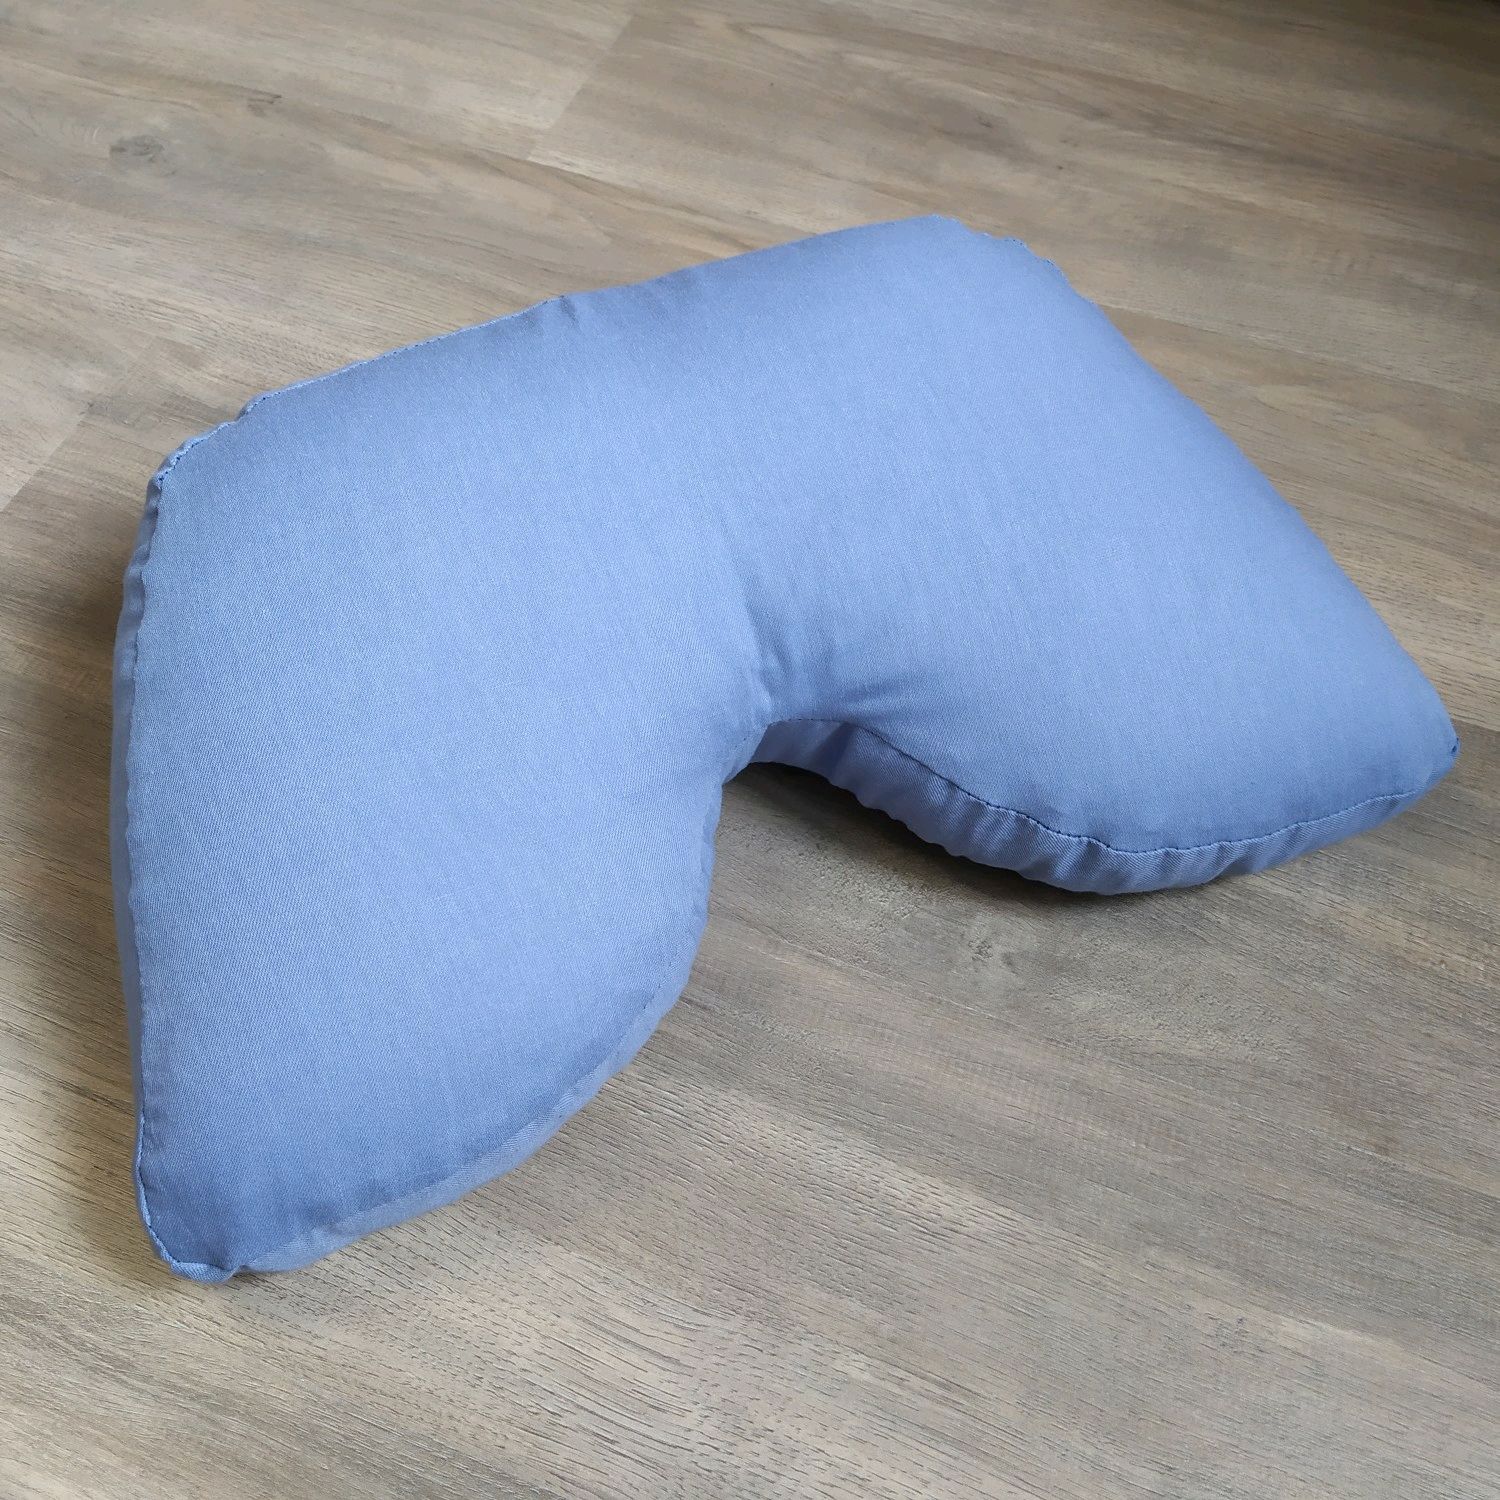 Купить подушку в перми